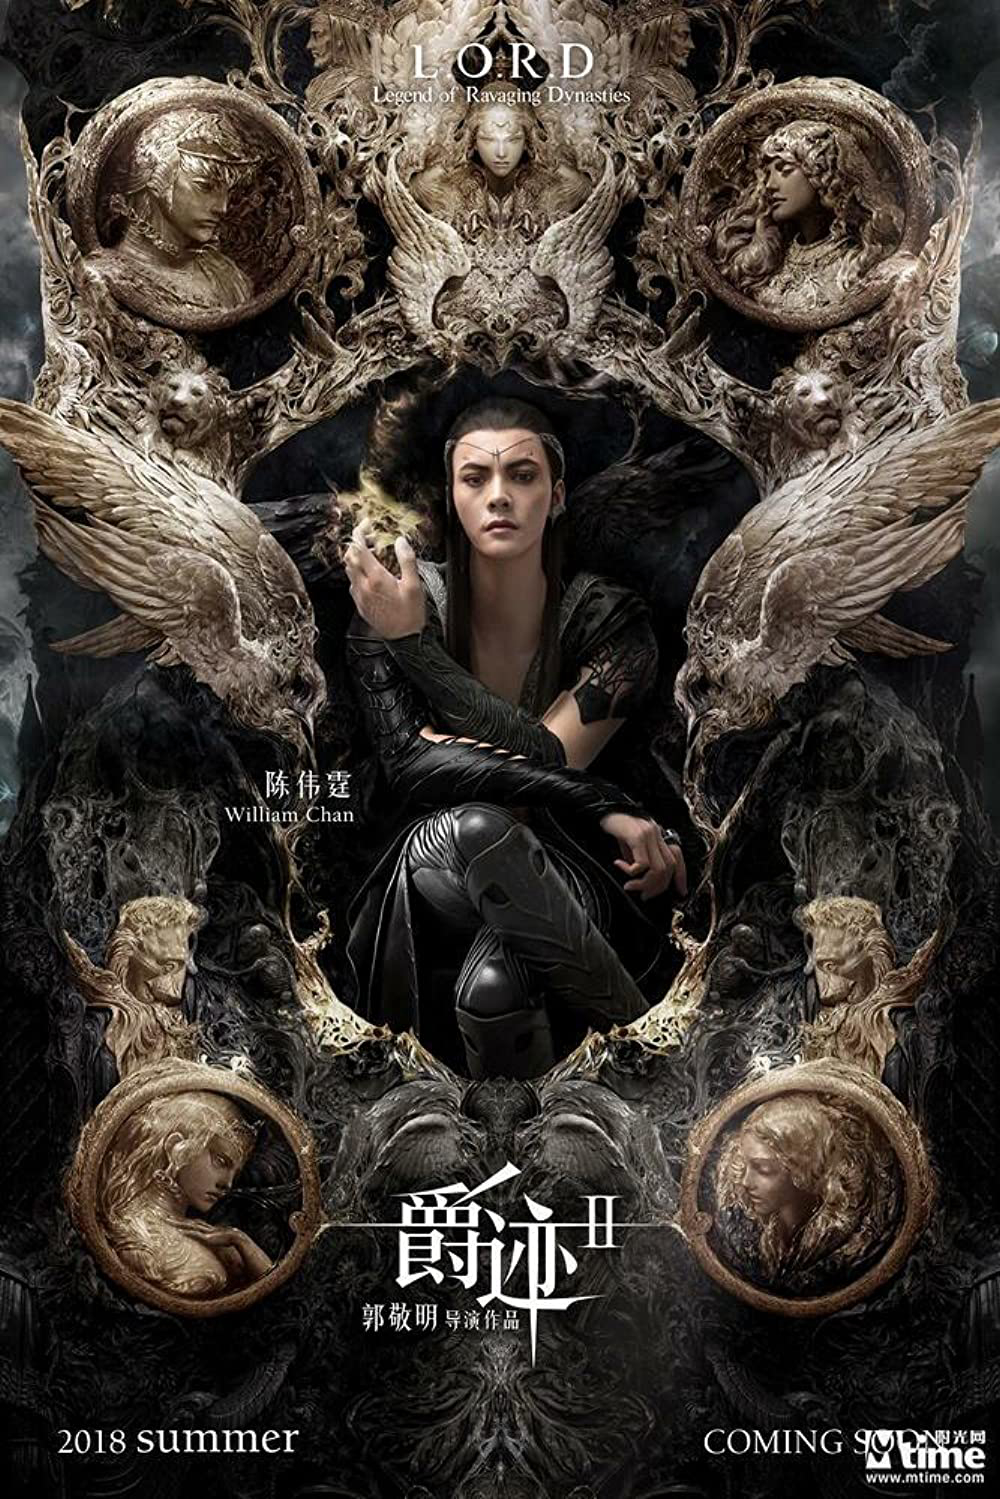 Poster Phim Tước Tích 2: Lãnh Huyết Cuồng Yến (L.O.R.D: Legend of Ravaging Dynasties 2)